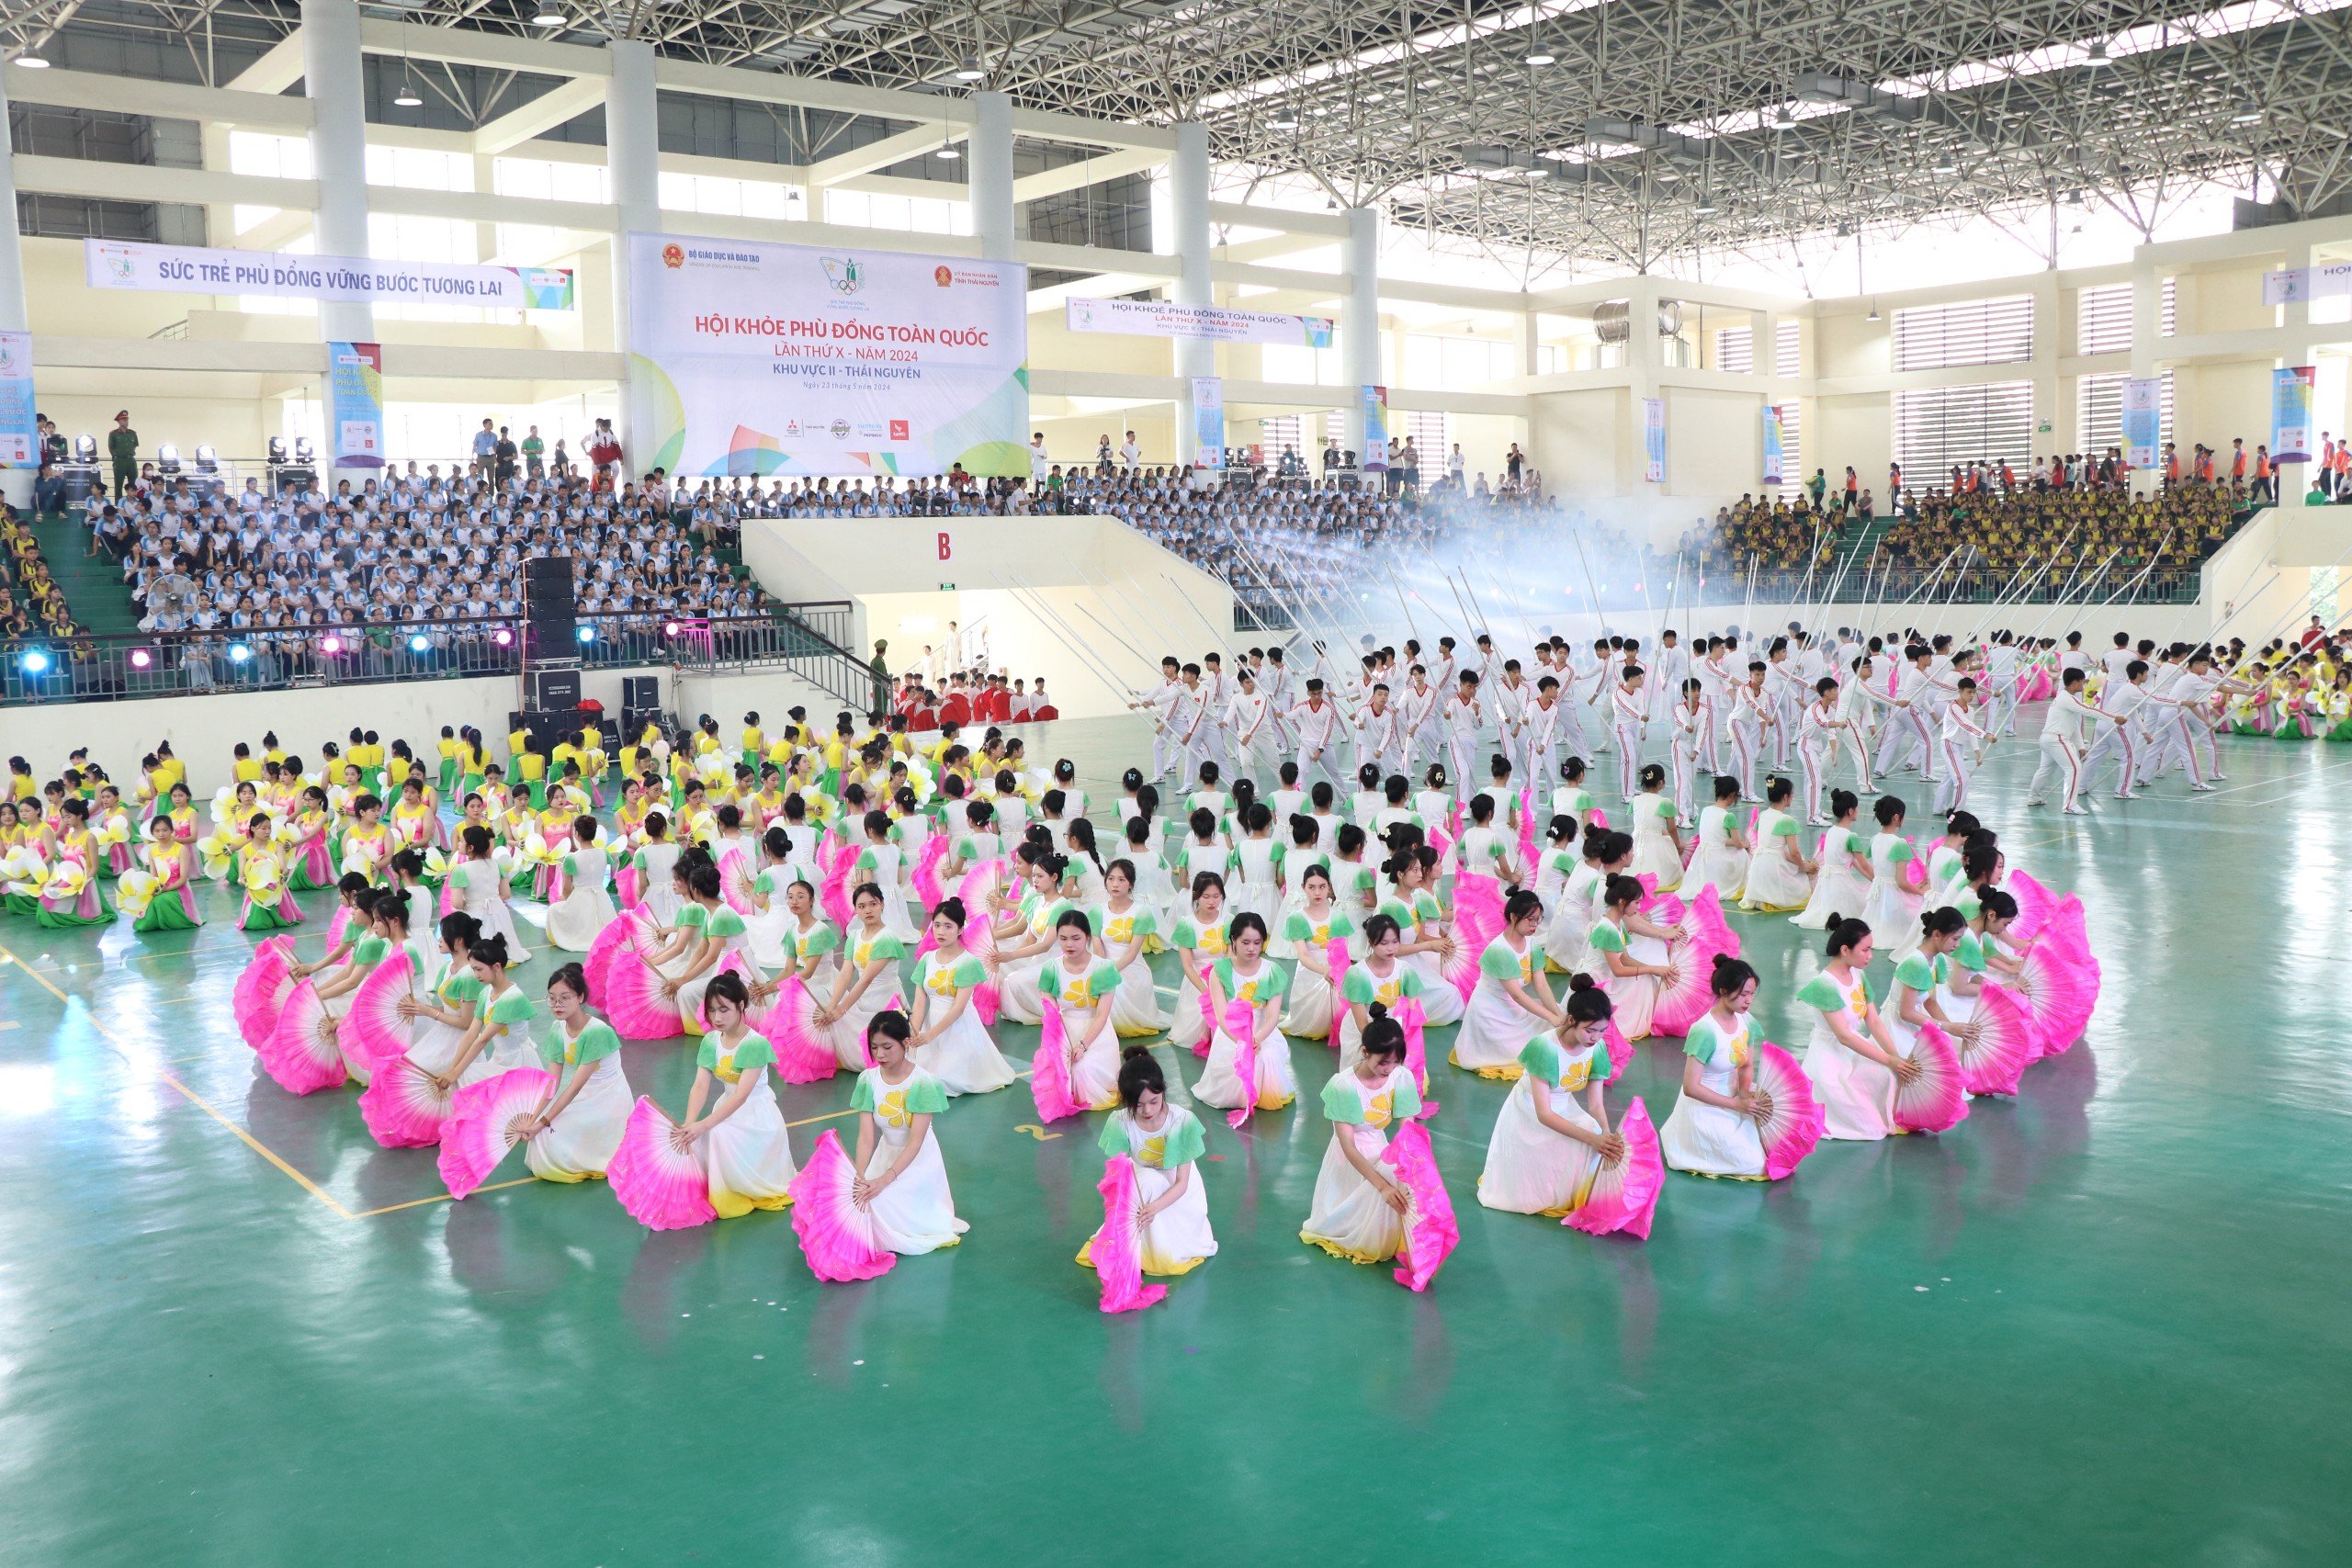 Gần 3.000 vận động viên tham gia Hội khoẻ Phù Đổng toàn quốc tại Thái Nguyên- Ảnh 1.